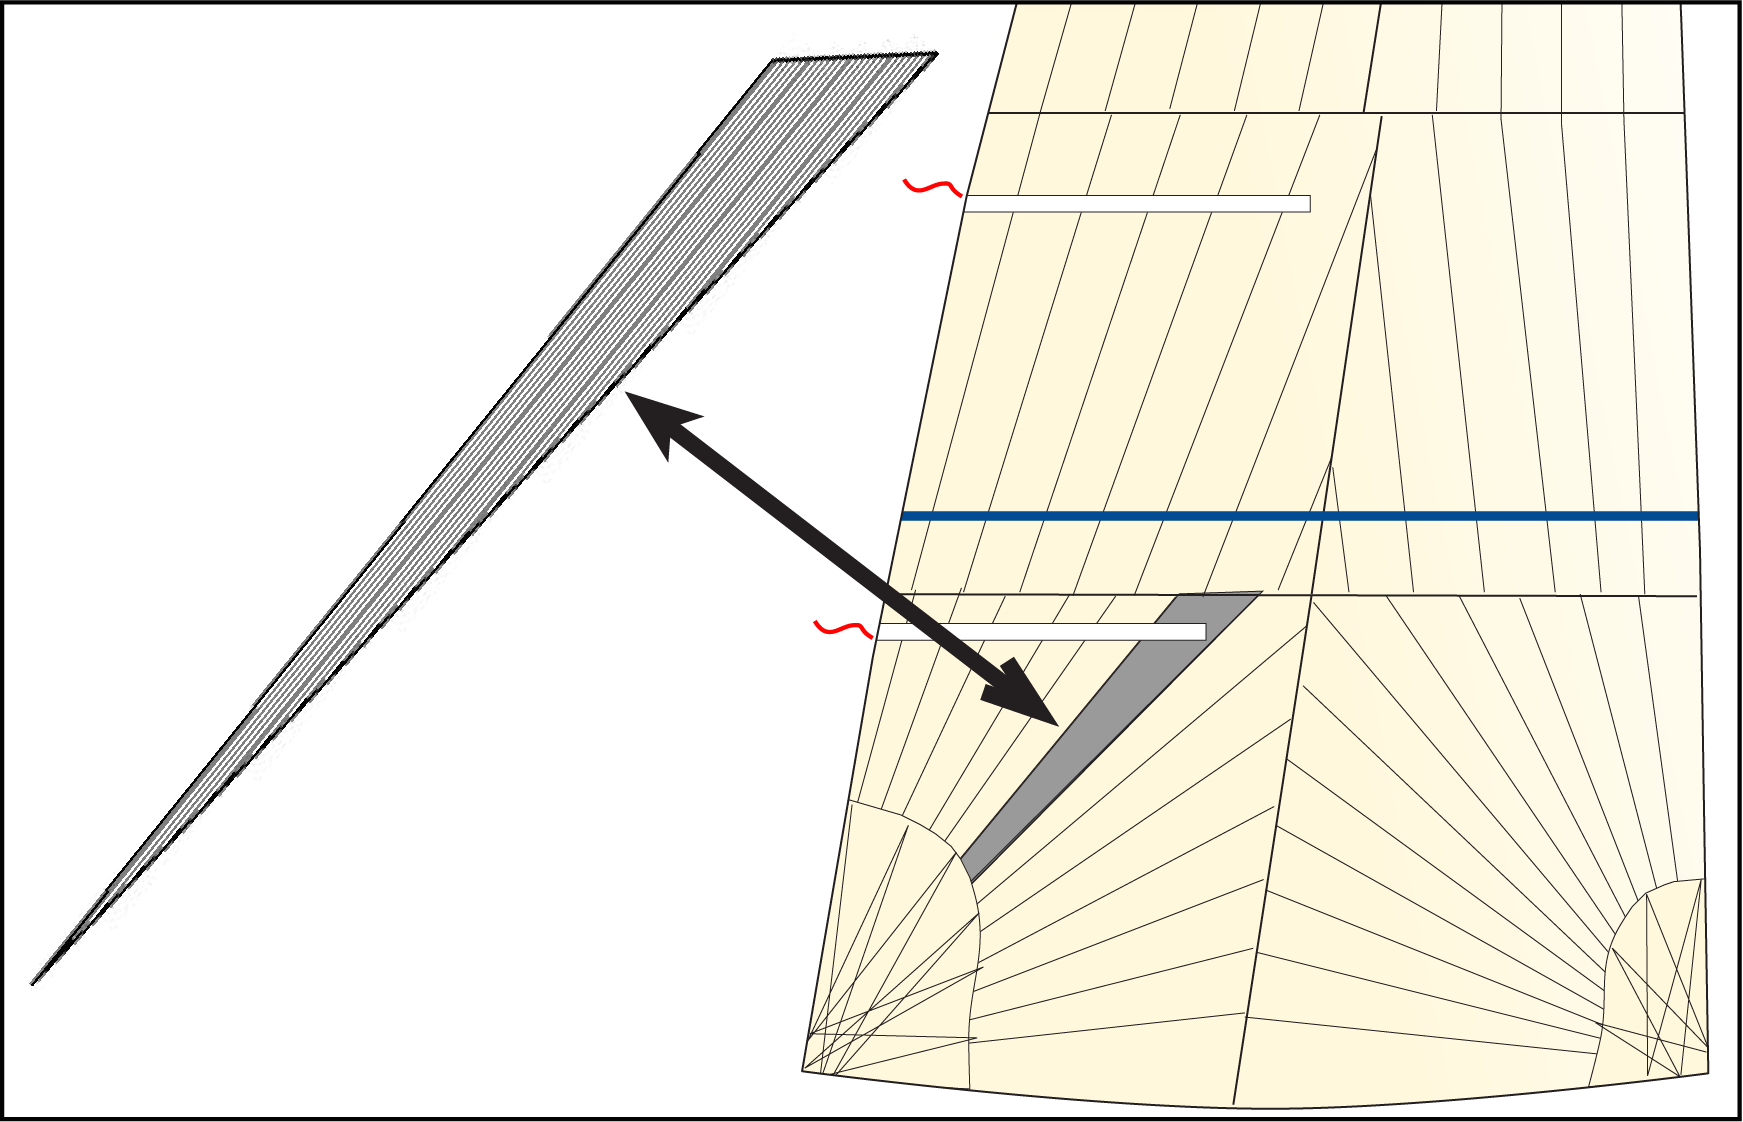 Oben: Derselbe Zwickel im Schothornbereich eines Großsegels, der die Ausrichtung der Kettfäden zeigt.